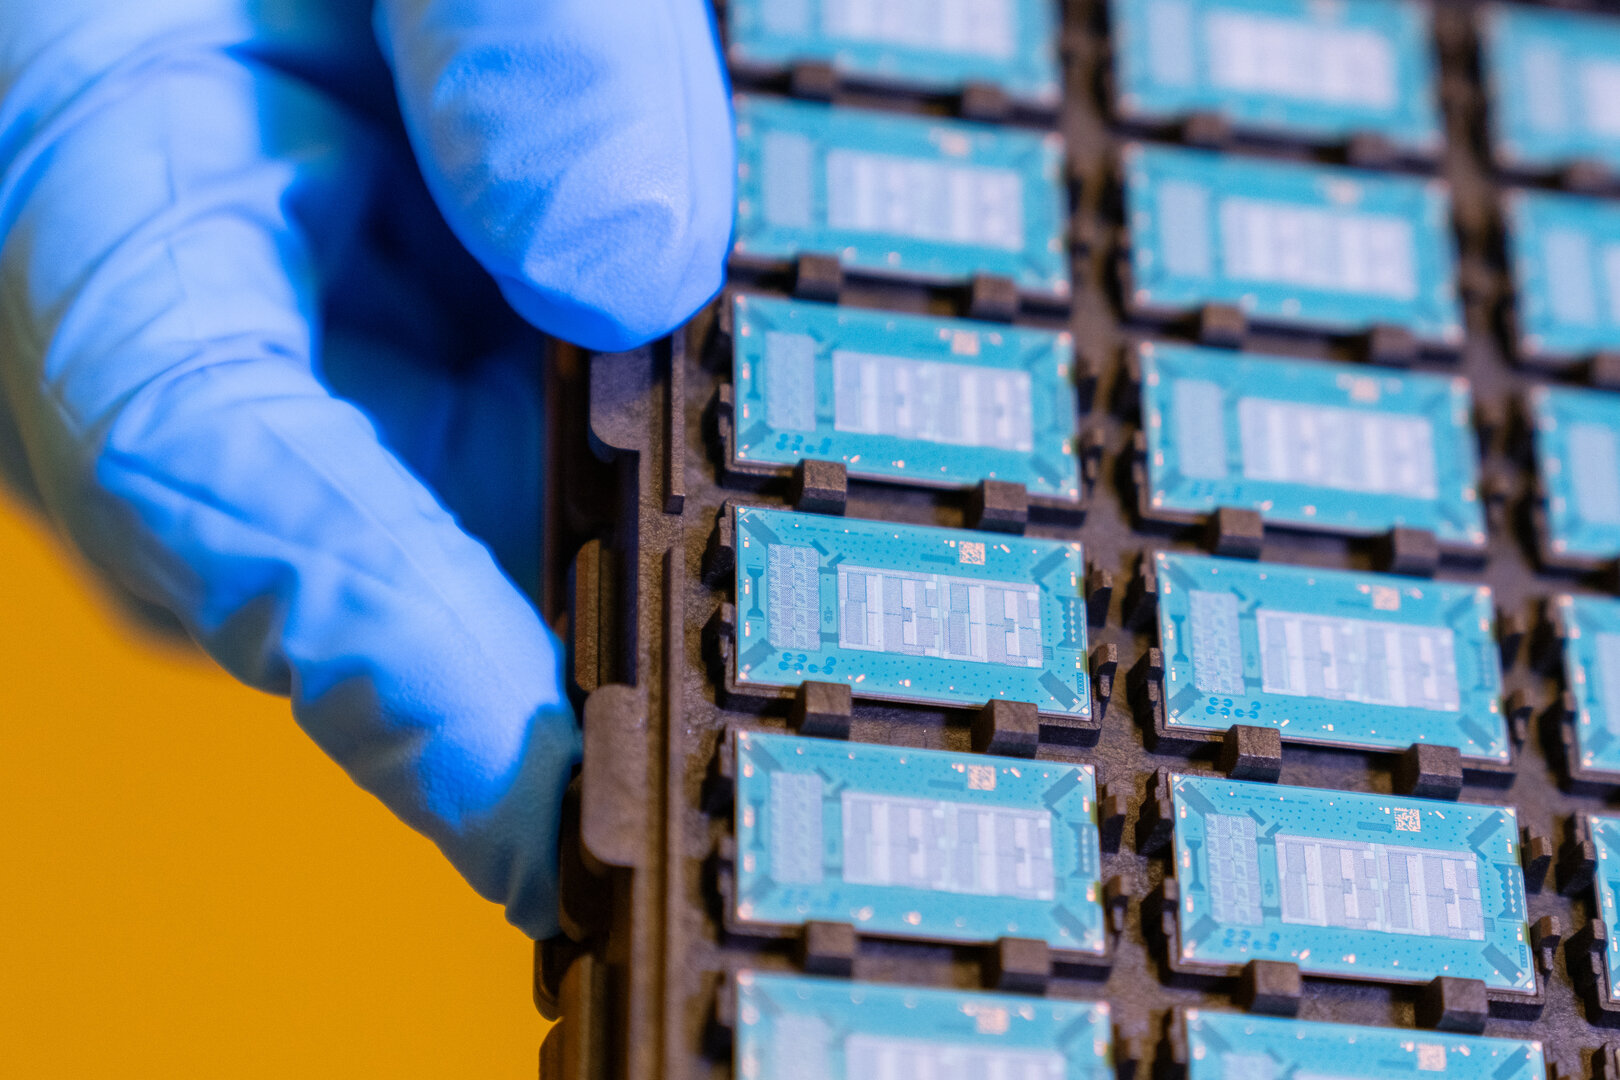 Substrato Intel Glass come pacchetto senza chip